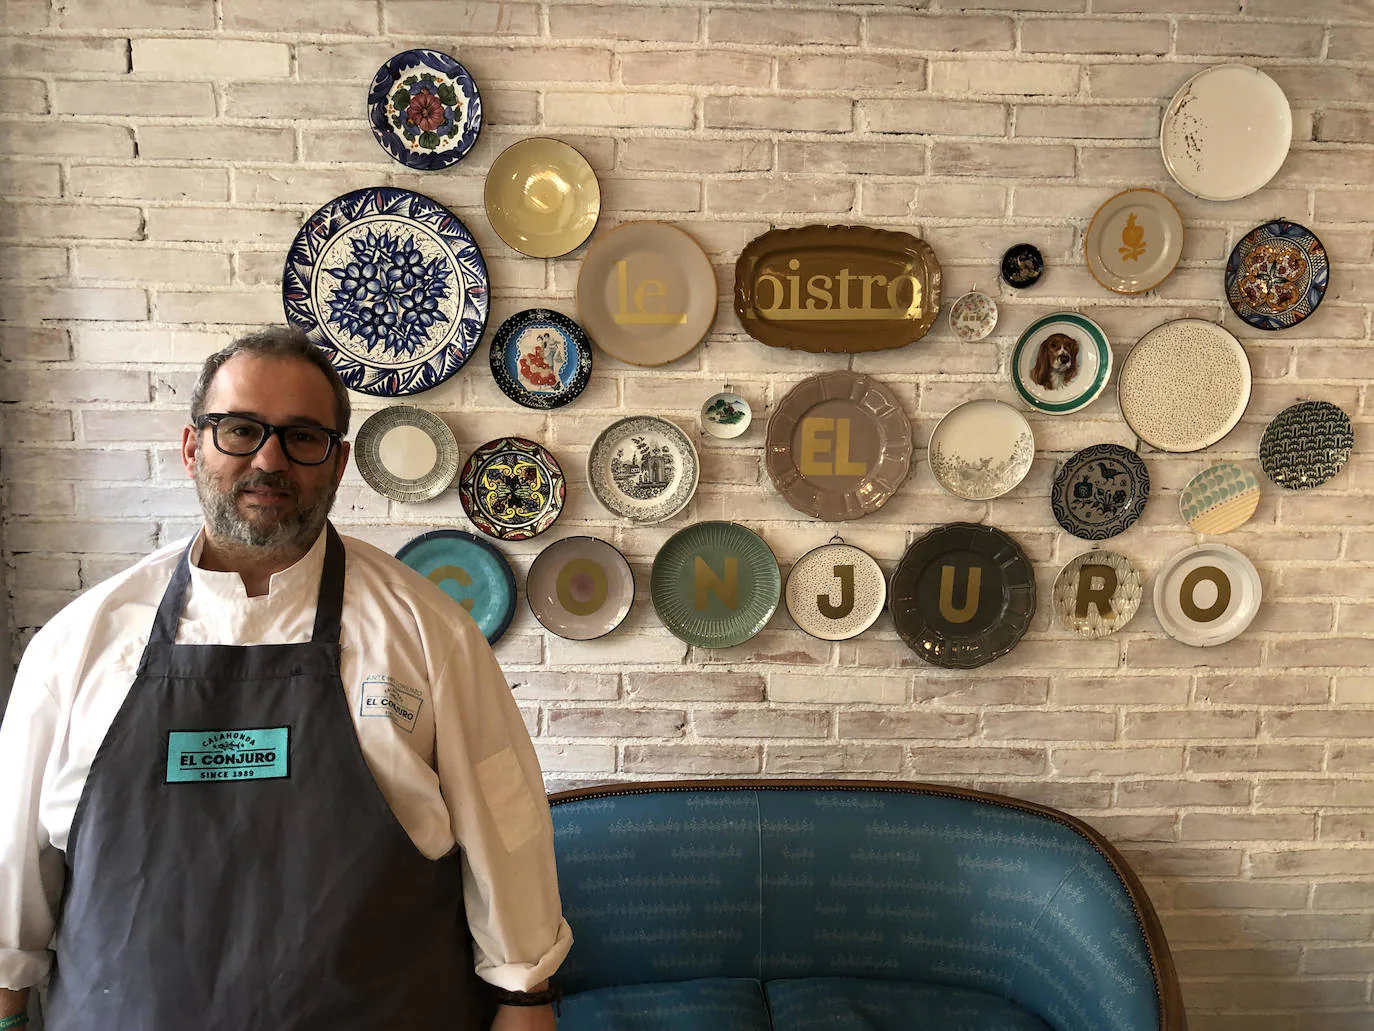 El Conjuro, uno de los referentes gastronómicos de la Costa Tropical, abre un bistró en Granada capital